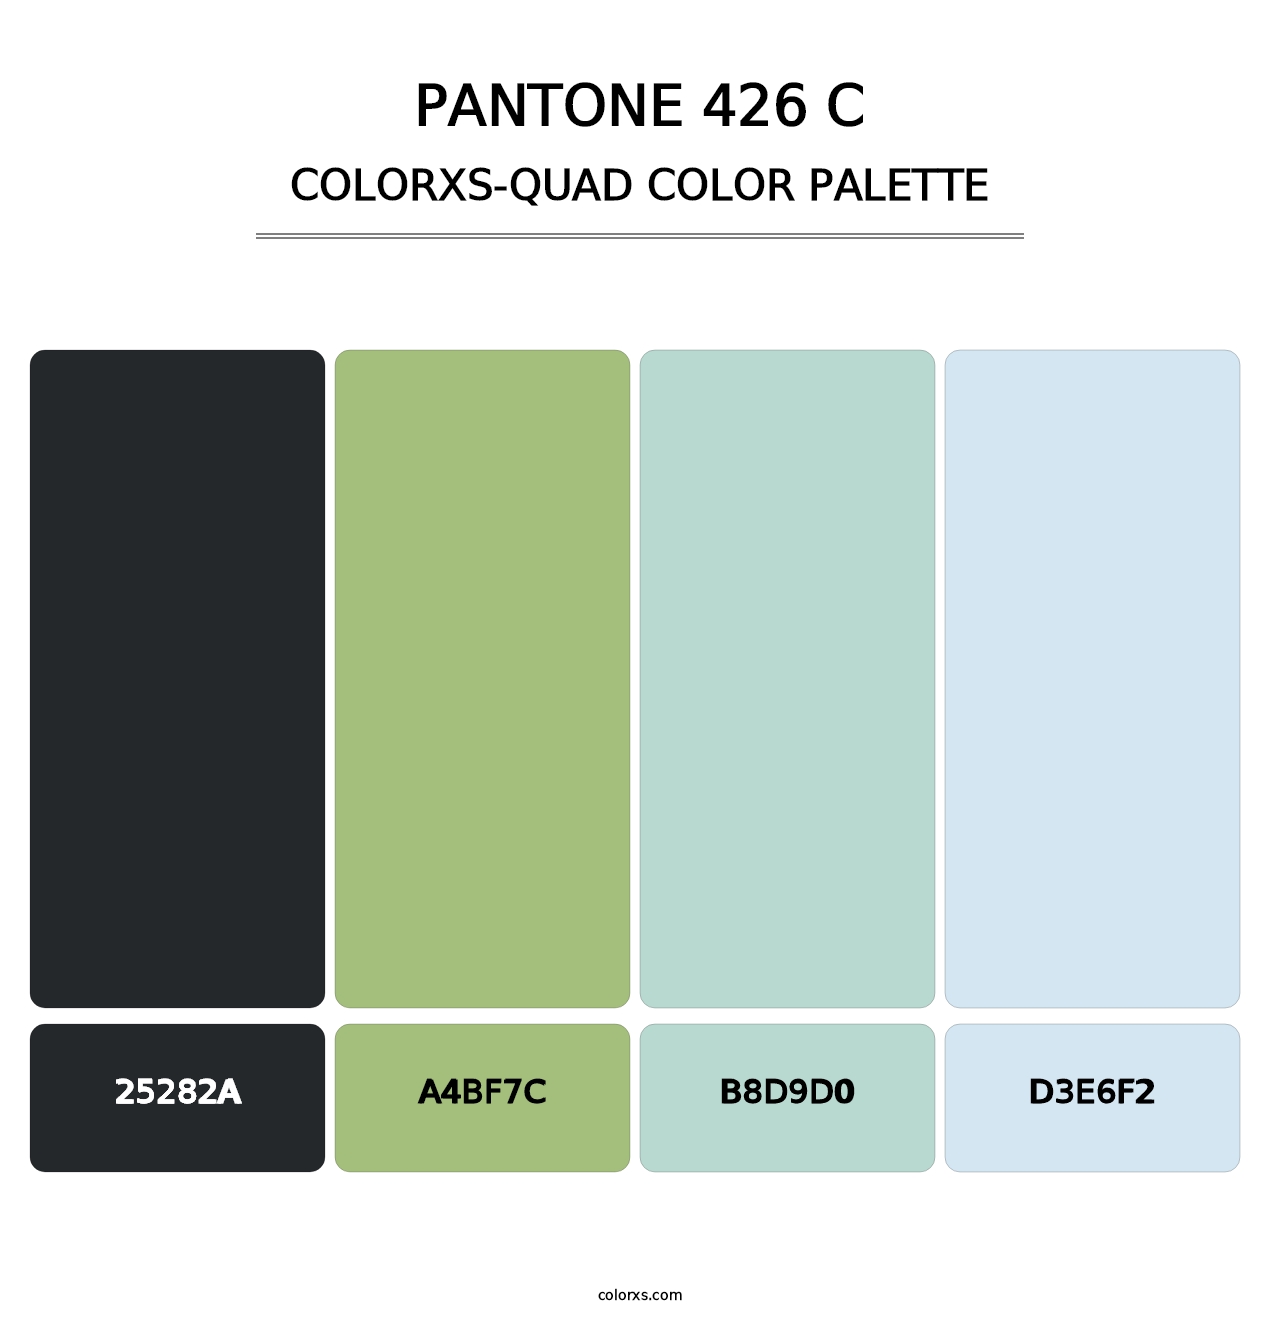 PANTONE 426 C - Colorxs Quad Palette